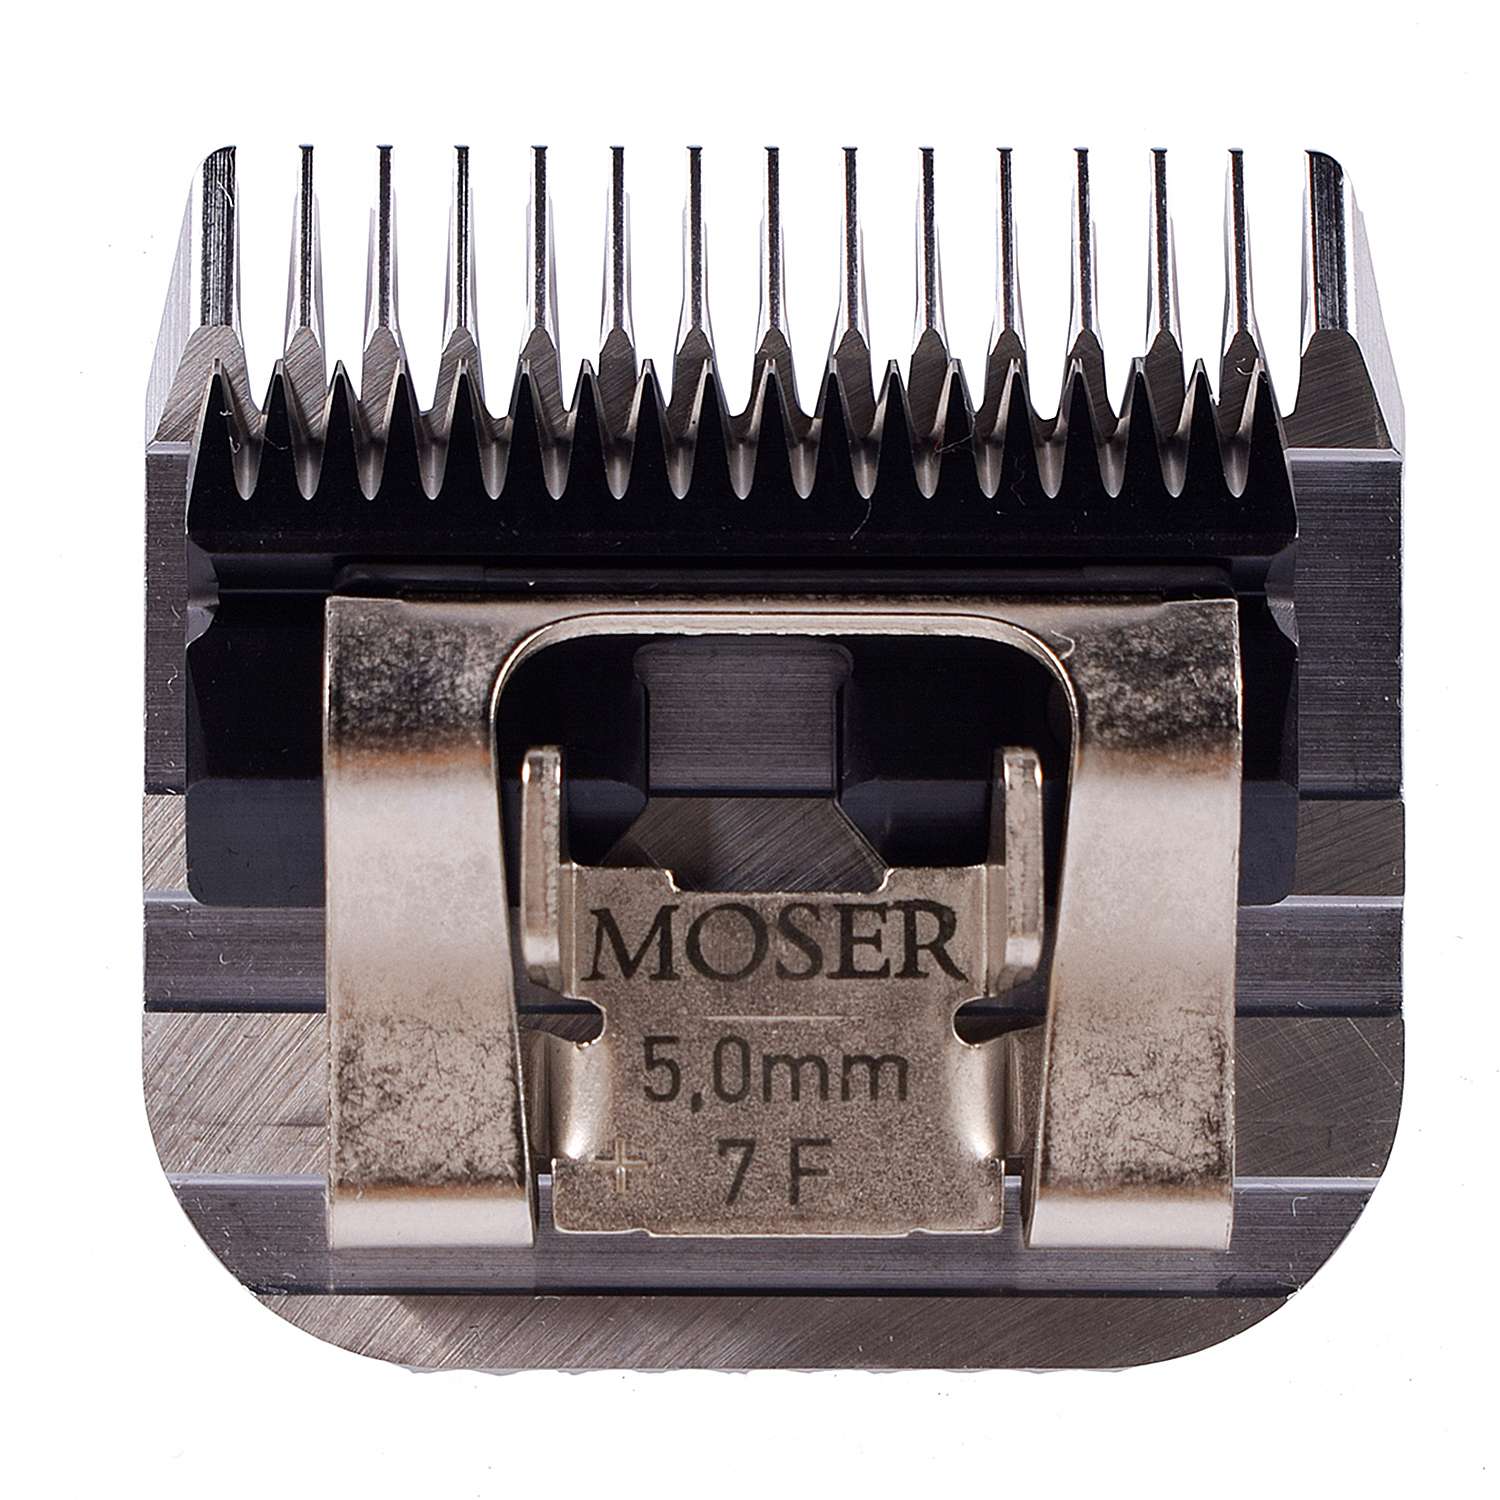 Ножевой блок мозер. Ножевой блок Мозер 2мм. Мозер 1245-7360. Нож Moser 1245-7360 №7f (5 мм). Ножевой блок "Moser 30f", для машинки "Moser Max 45", съемный, 1 мм.